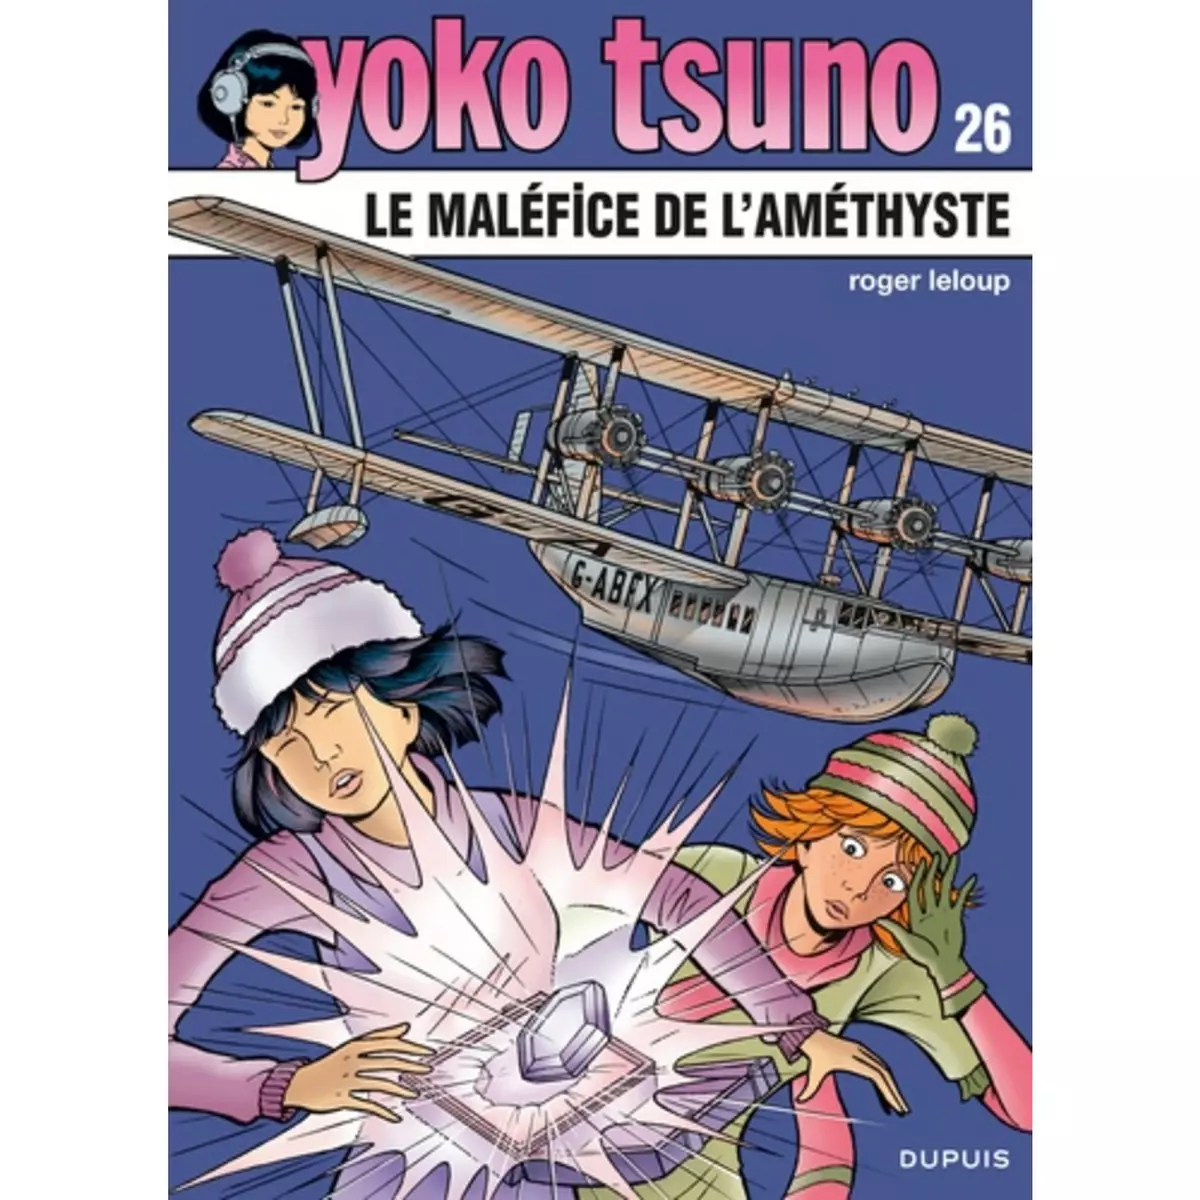  YOKO TSUNO TOME 26 : LE MALEFICE DE L'AMETHYSTE, Leloup Roger